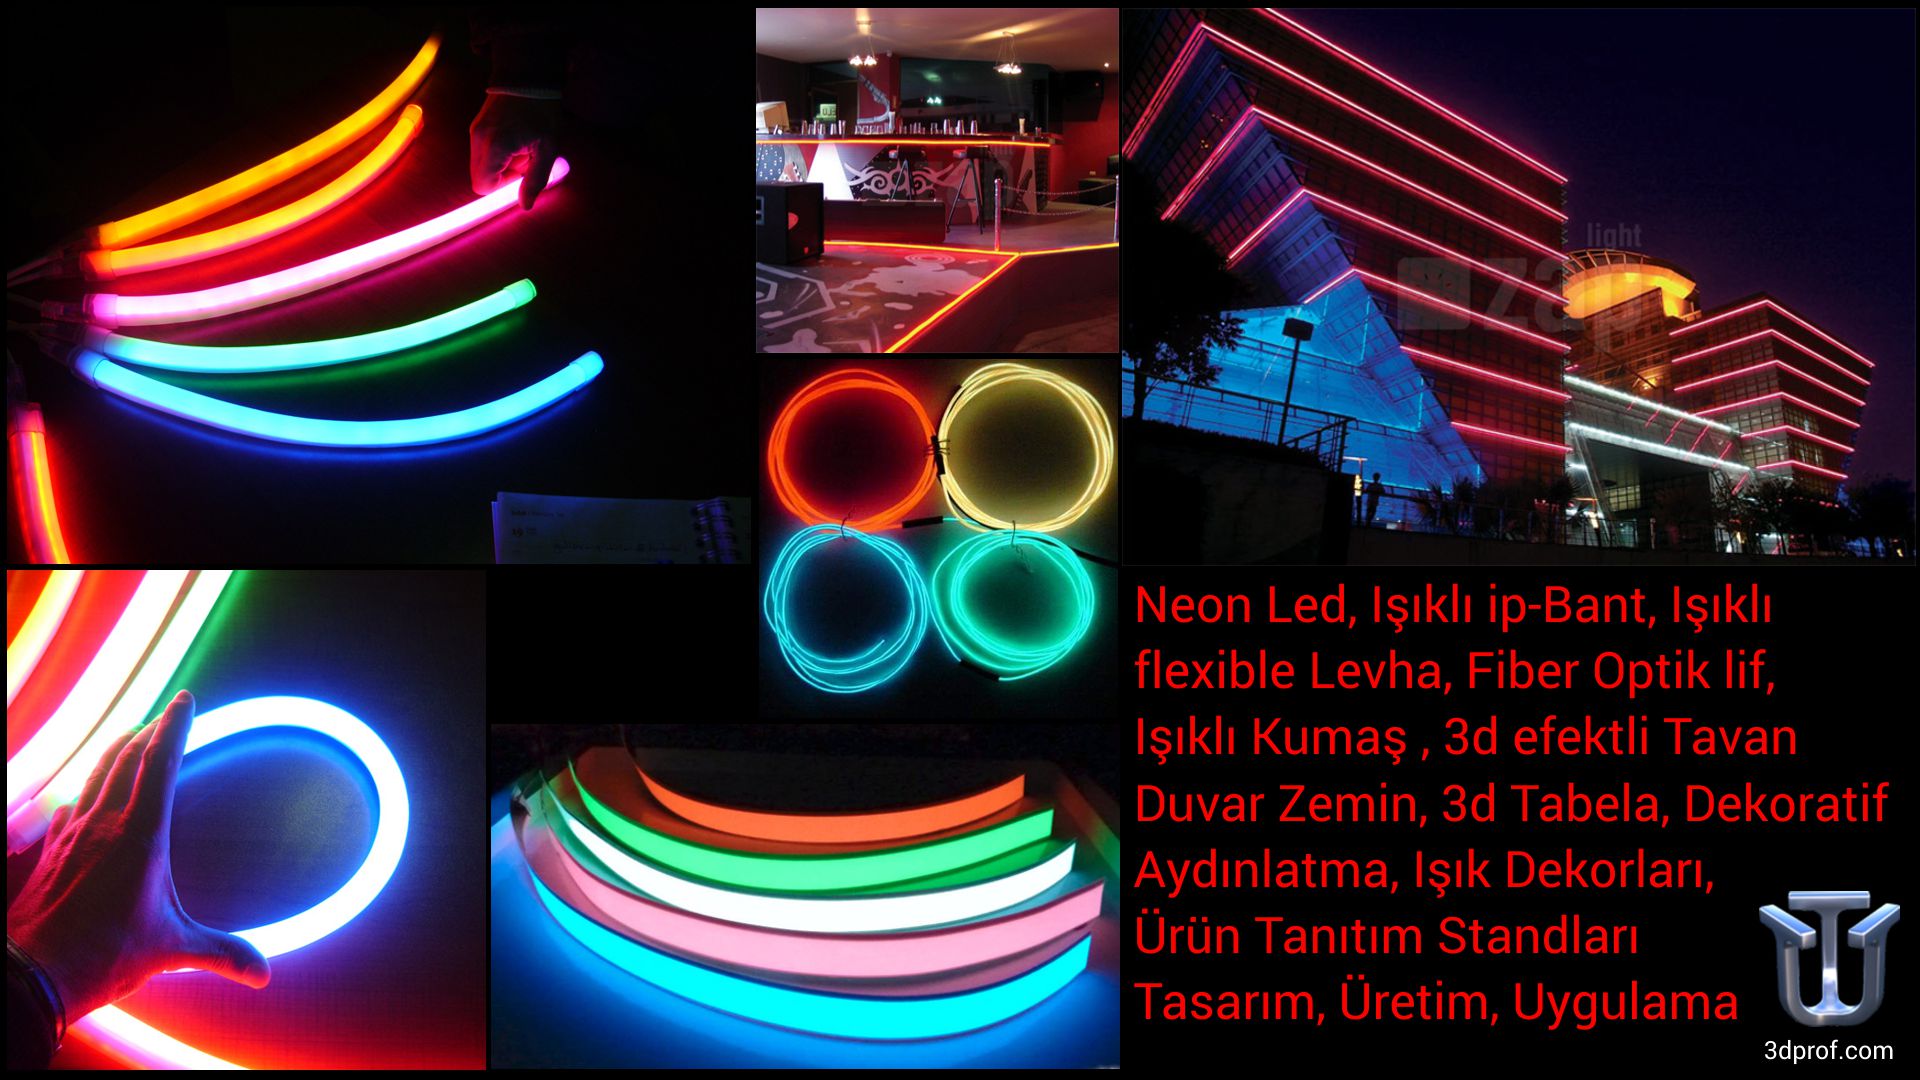 Neon Led, Işıklı ip-Bant, Işıklı flexible Levha, Fiber Optik lif, Işıklı Kumaş , 3d efektli Tavan Duvar Zemin, 3d Tabela, Dekoratif Aydınlatma, Işık Dekorları, Ürün Tanıtım Standları Tasarım, Üretim, Uygulama